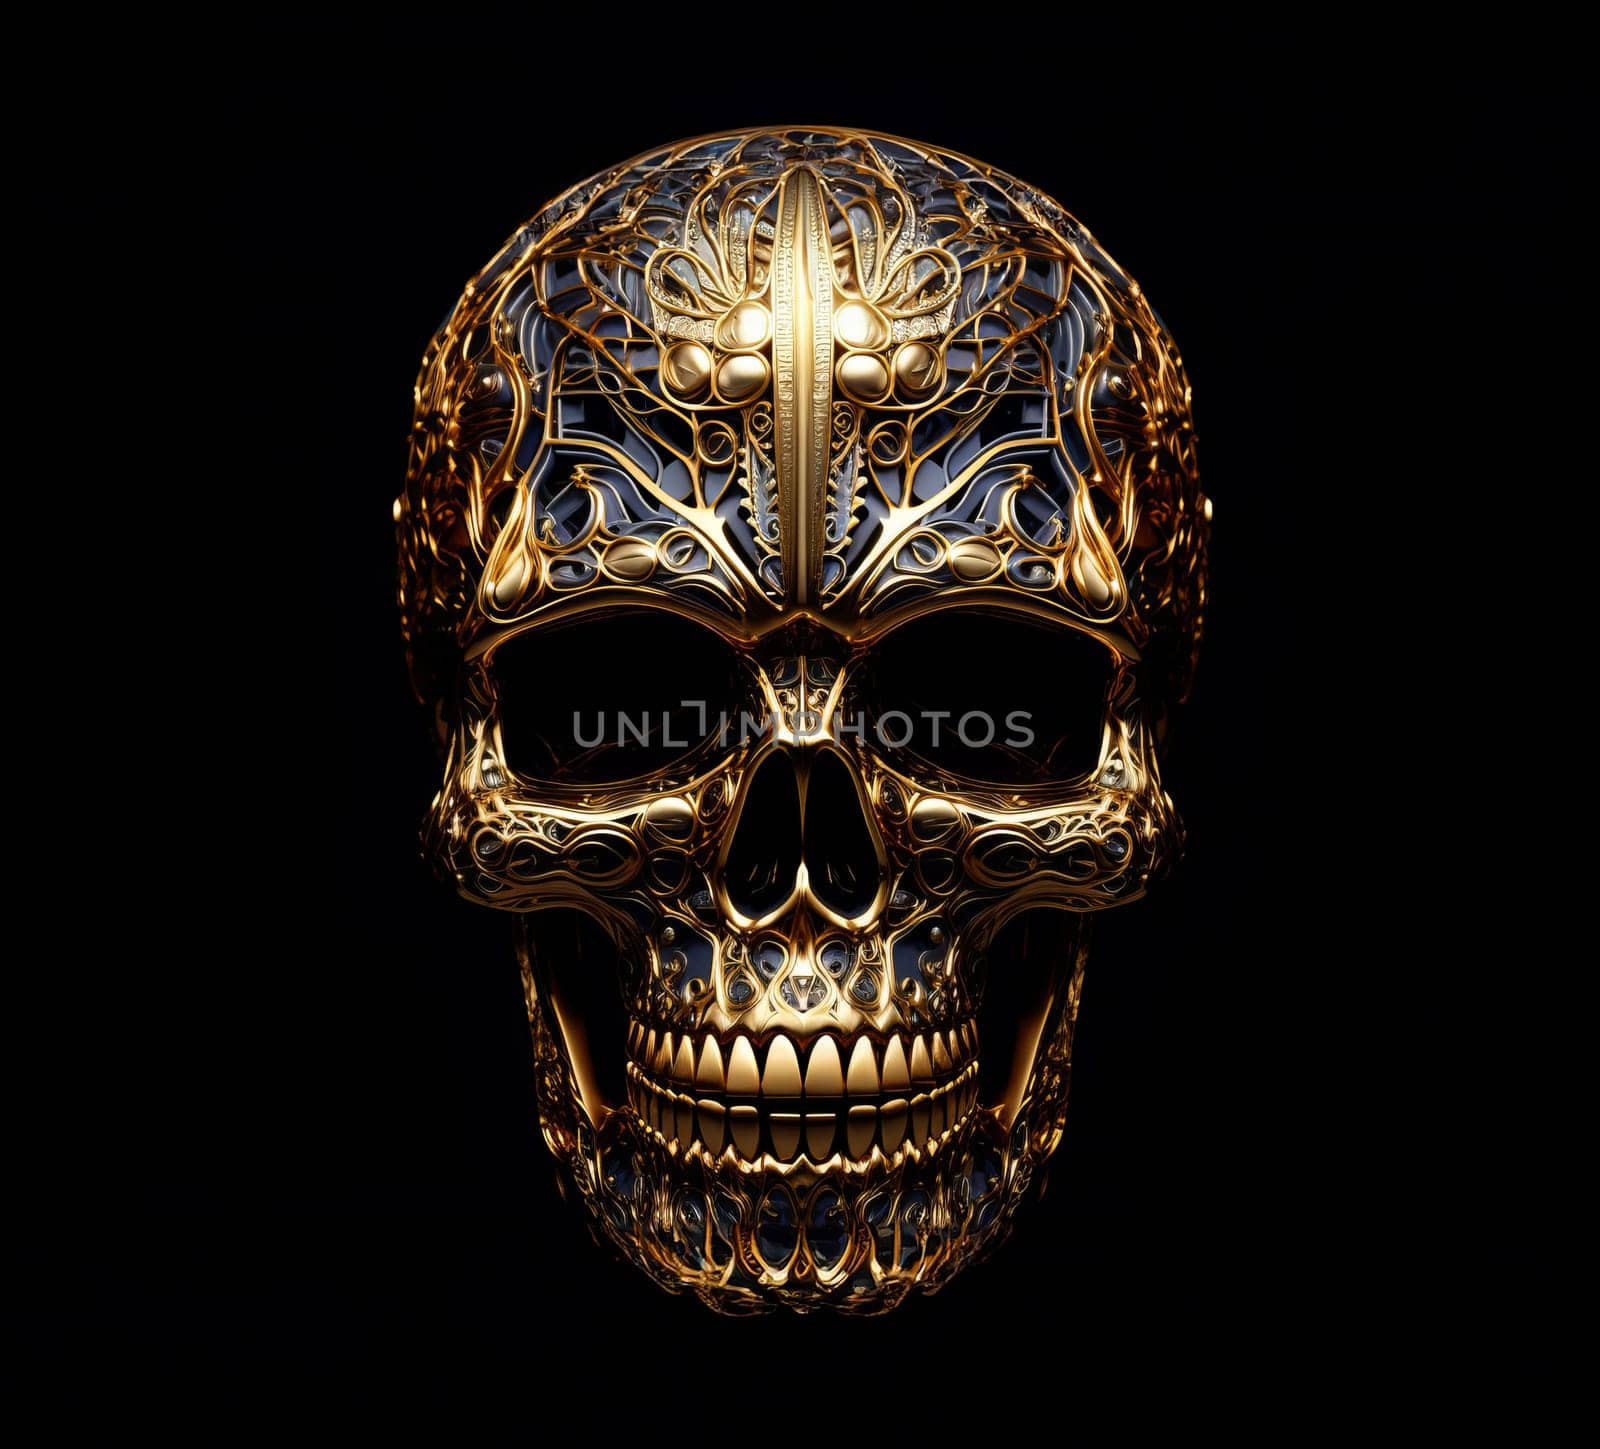 Gold detailed patterned skull on a dark background 5k